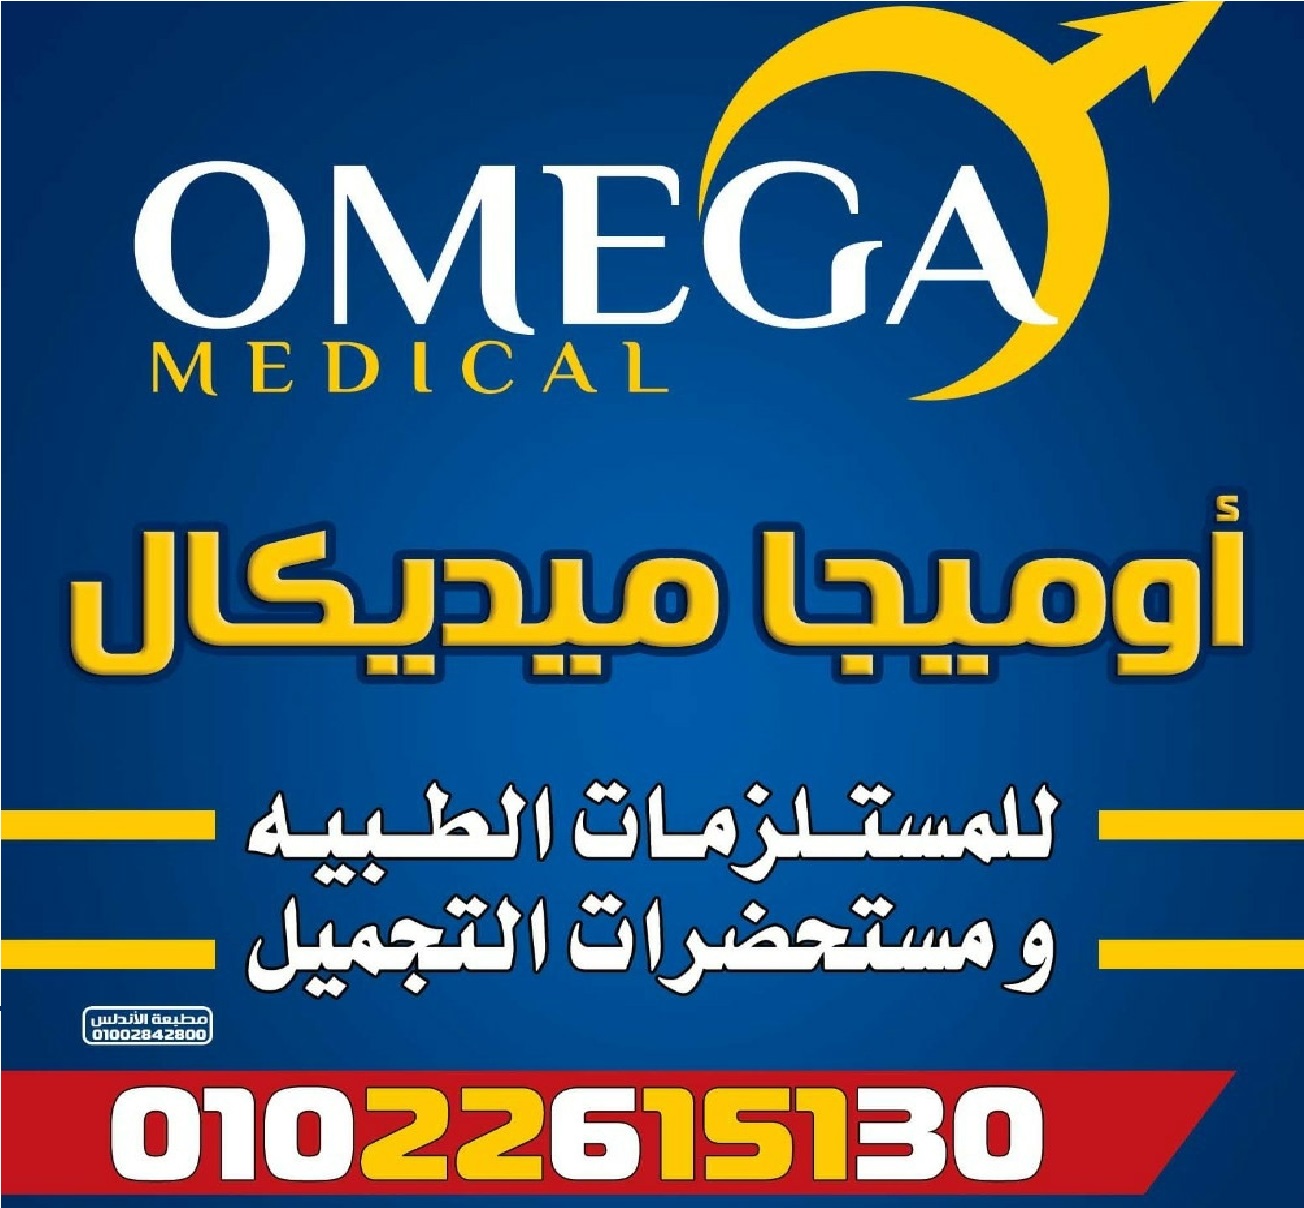 شركة اوميجا للمستلزمات الطبية